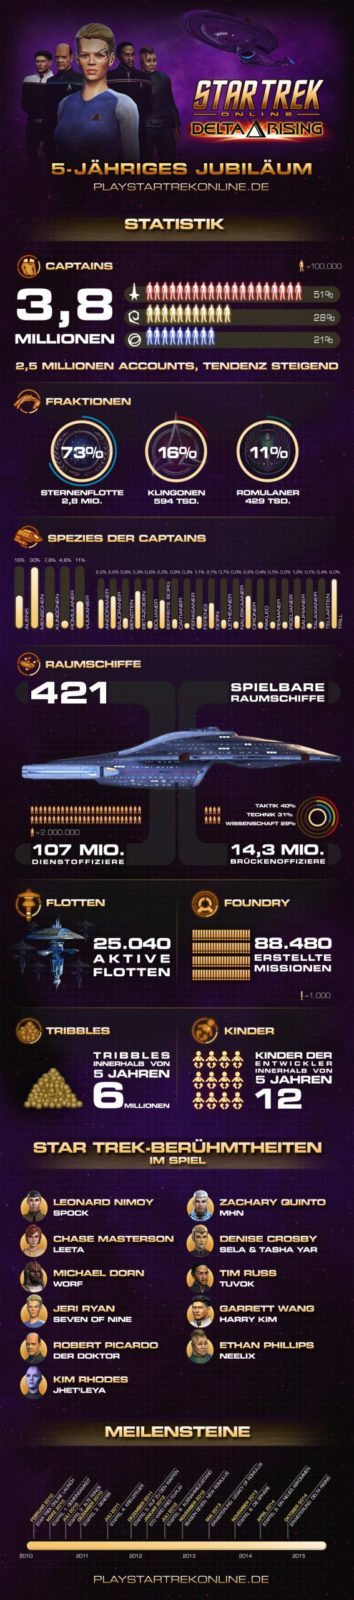 Star Trek Online – Statistik zum 5. Geburtstag